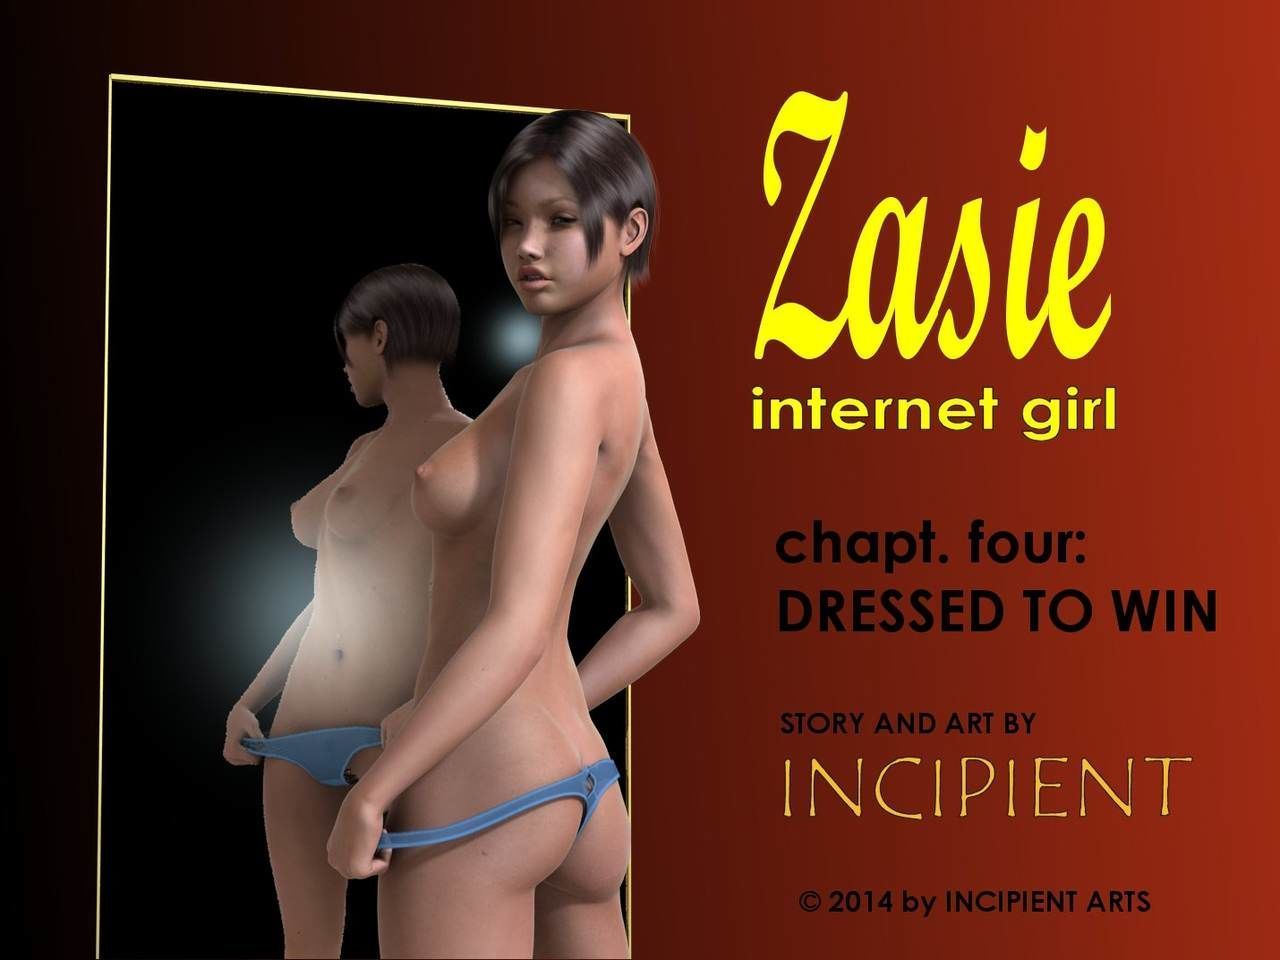 [incipient] zasie Интернет девушка ch. 4: одет в выиграть